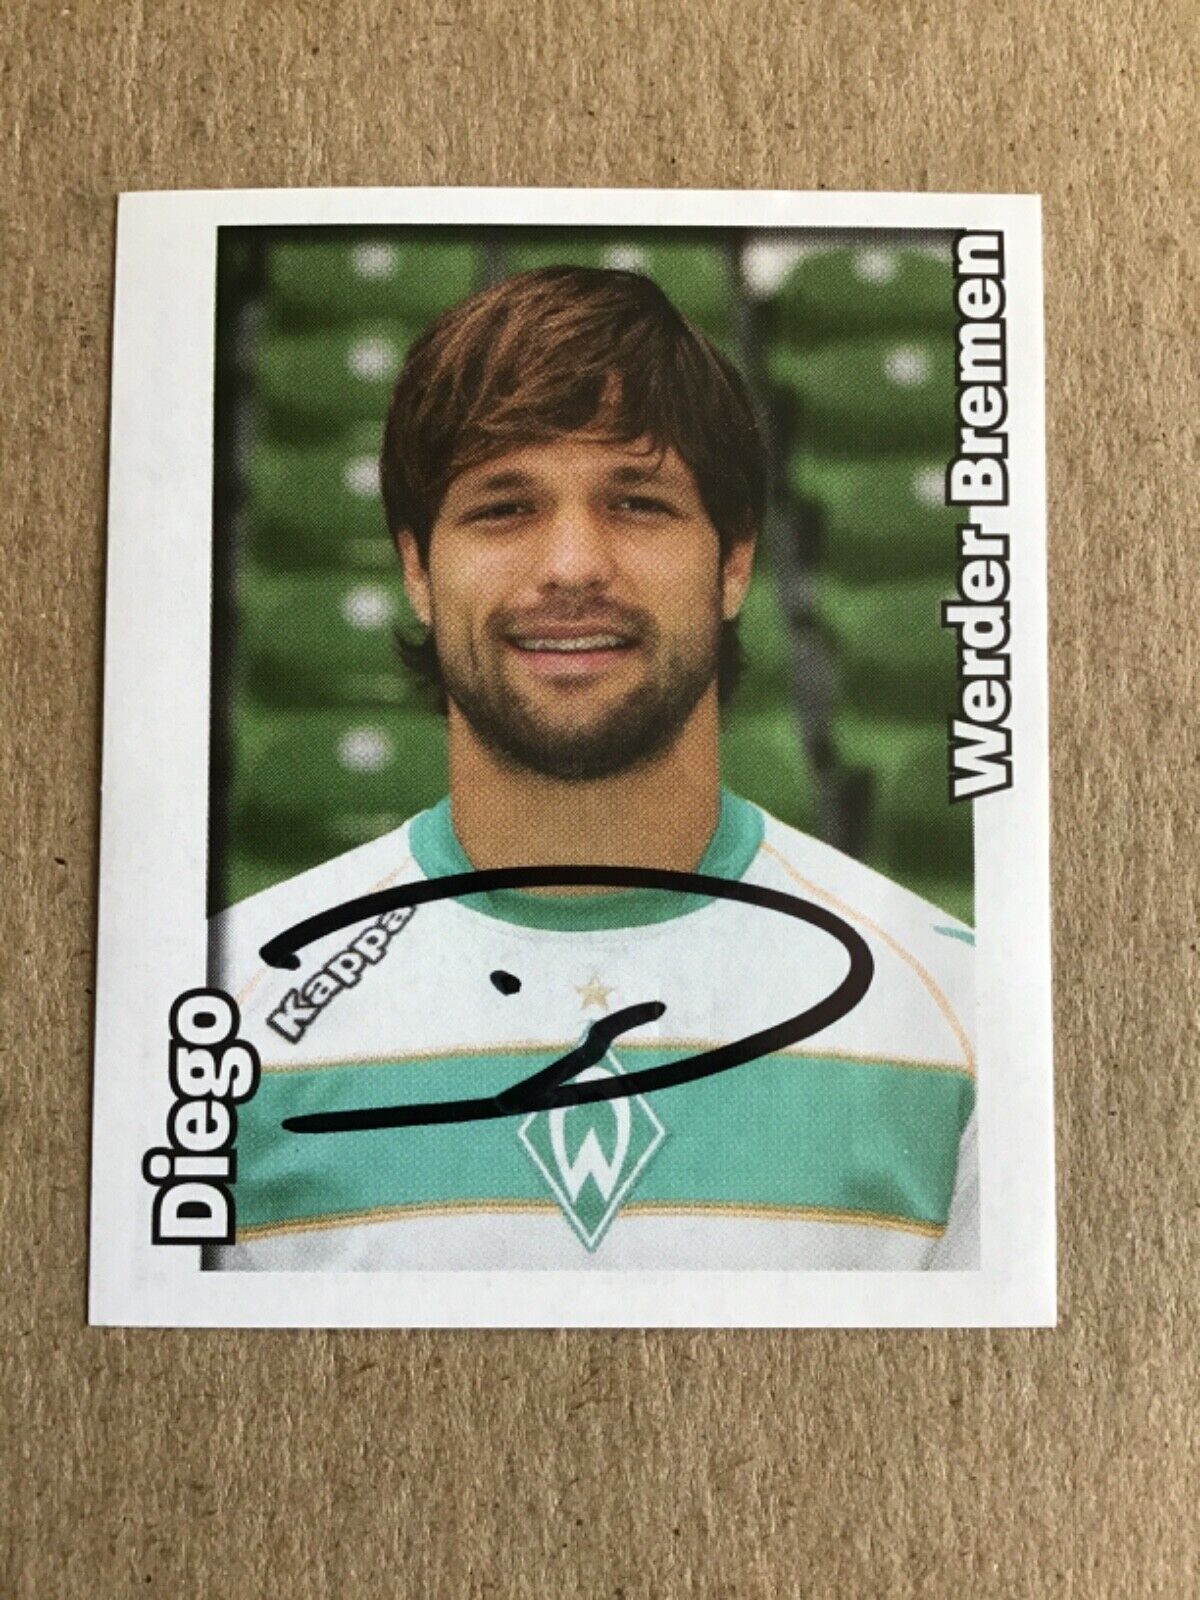 Diego, Brazil 🇧🇷 SV Werder Bremen Panini 2008/09 hand signed